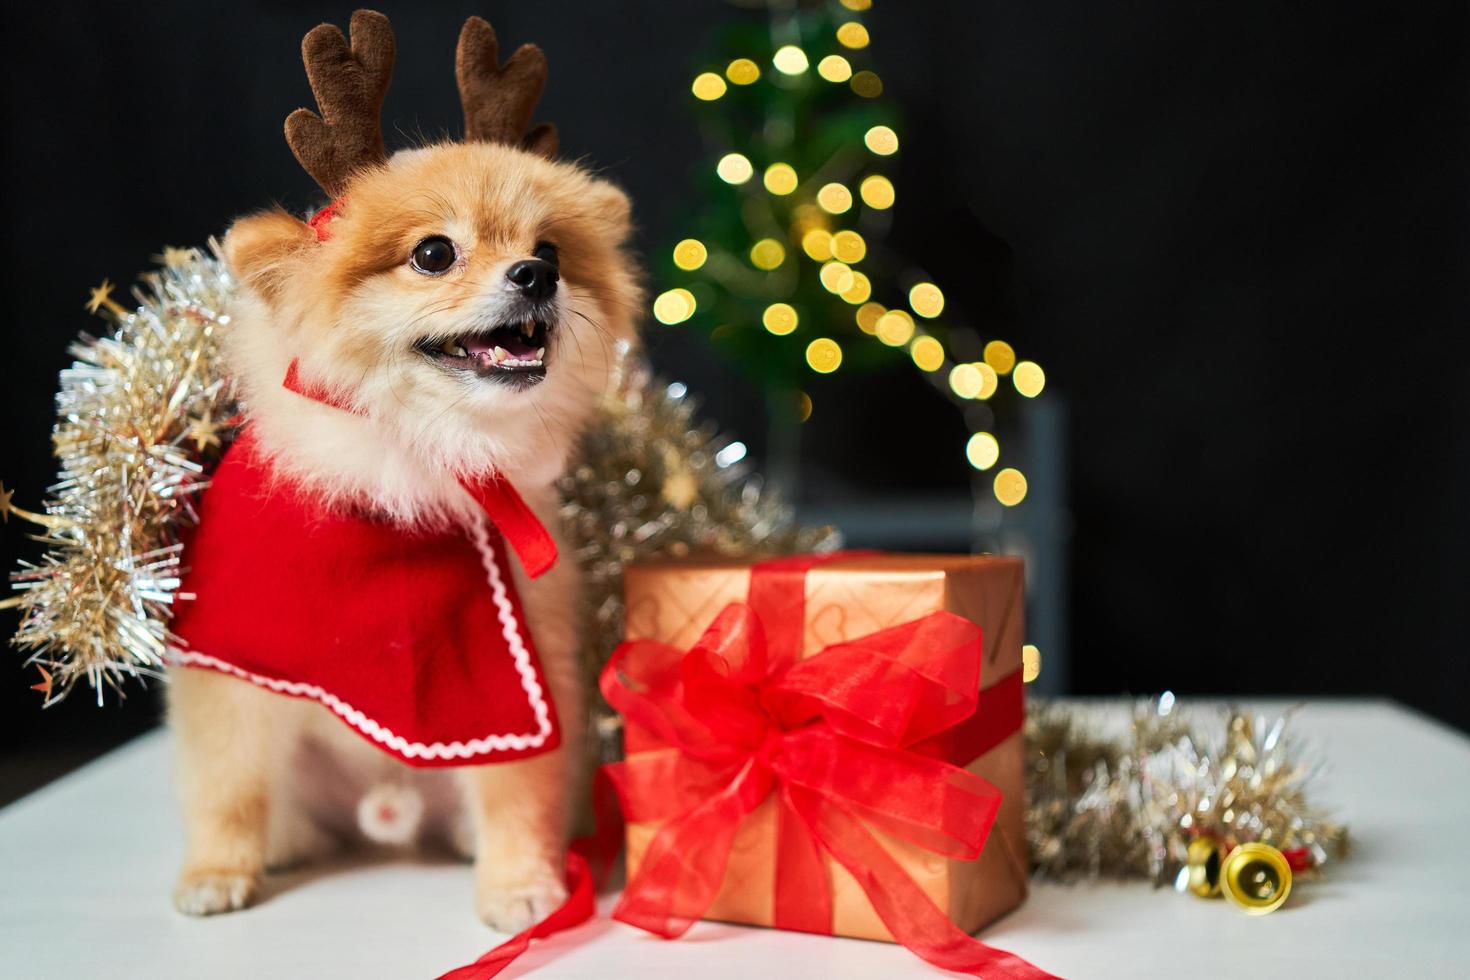 cão fofo pomeranian com uma borda de um boné de chifre de veado perto da árvore de natal e caixa de presente. fundo de decorações de ano novo. animal de estimação e férias foto